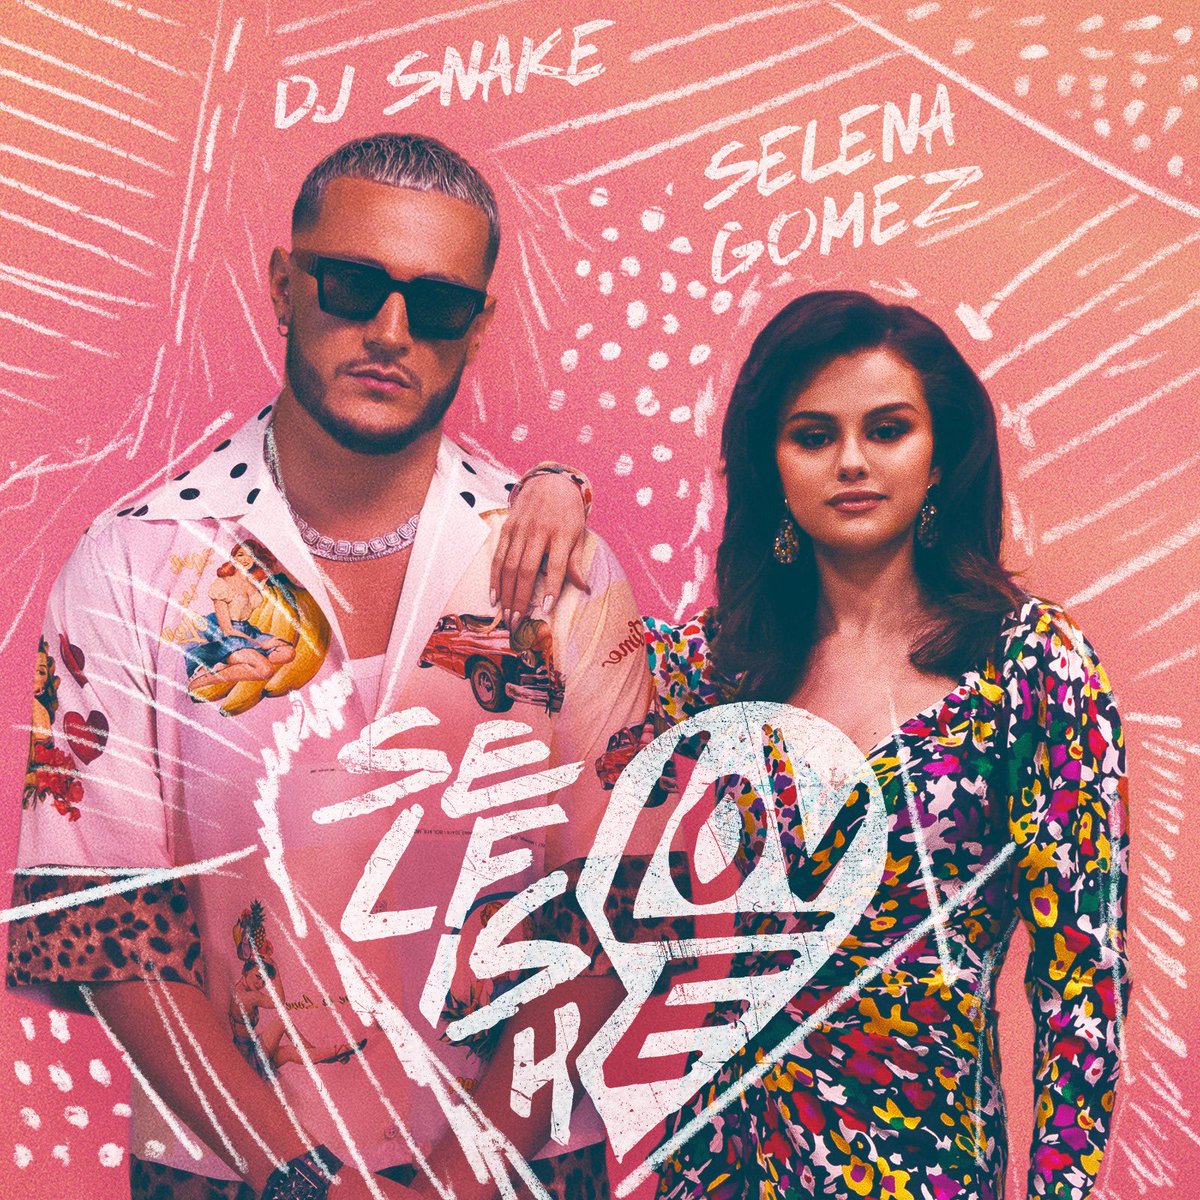 Istoria se repetă. Selena Gomez și DJ Snake colaborează din nou. Ai ascultat Selfish love?